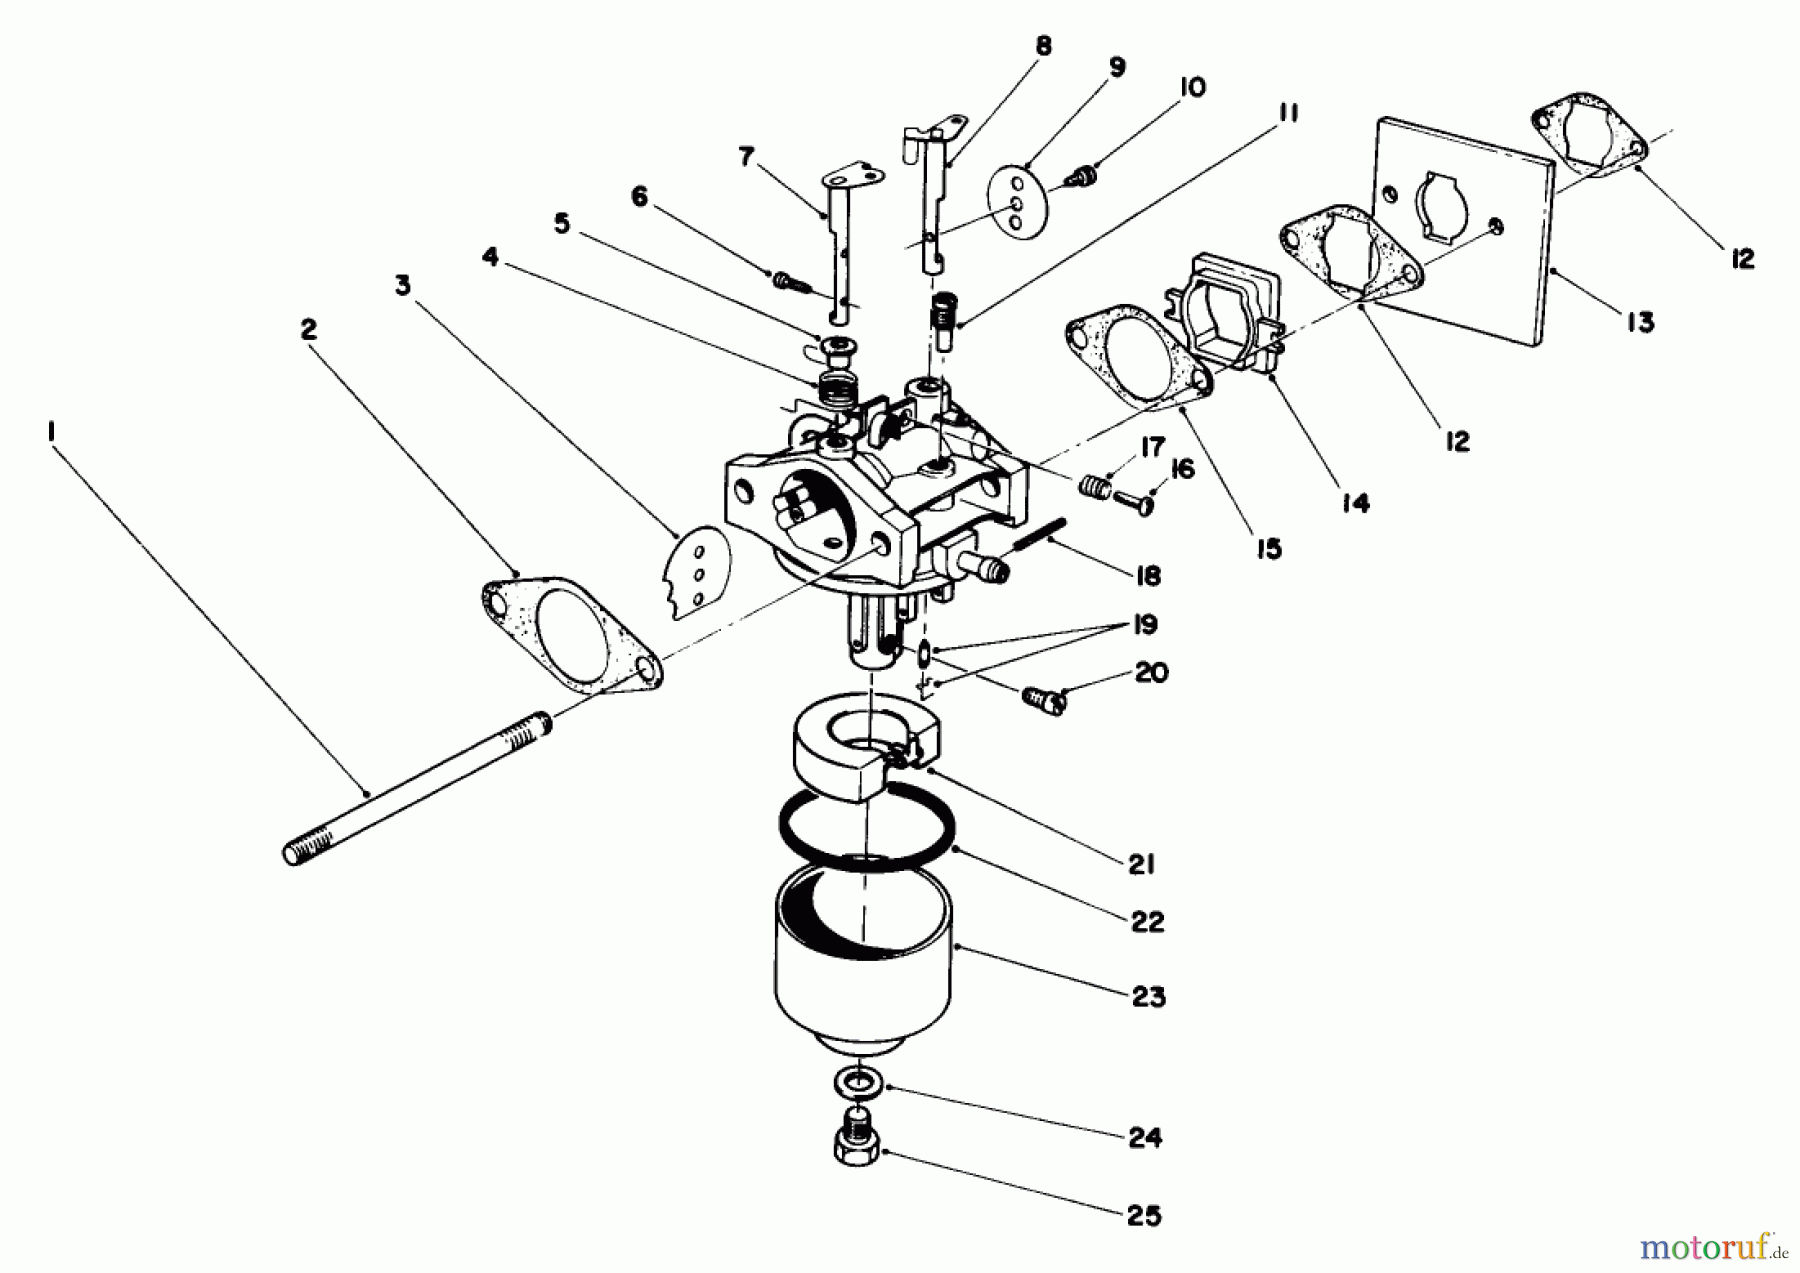  Toro Neu Mowers, Walk-Behind Seite 2 22035 - Toro Lawnmower, 1988 (8000001-8002989) ENGINE ASSEMBLY MODEL NO. 47PH7 #3